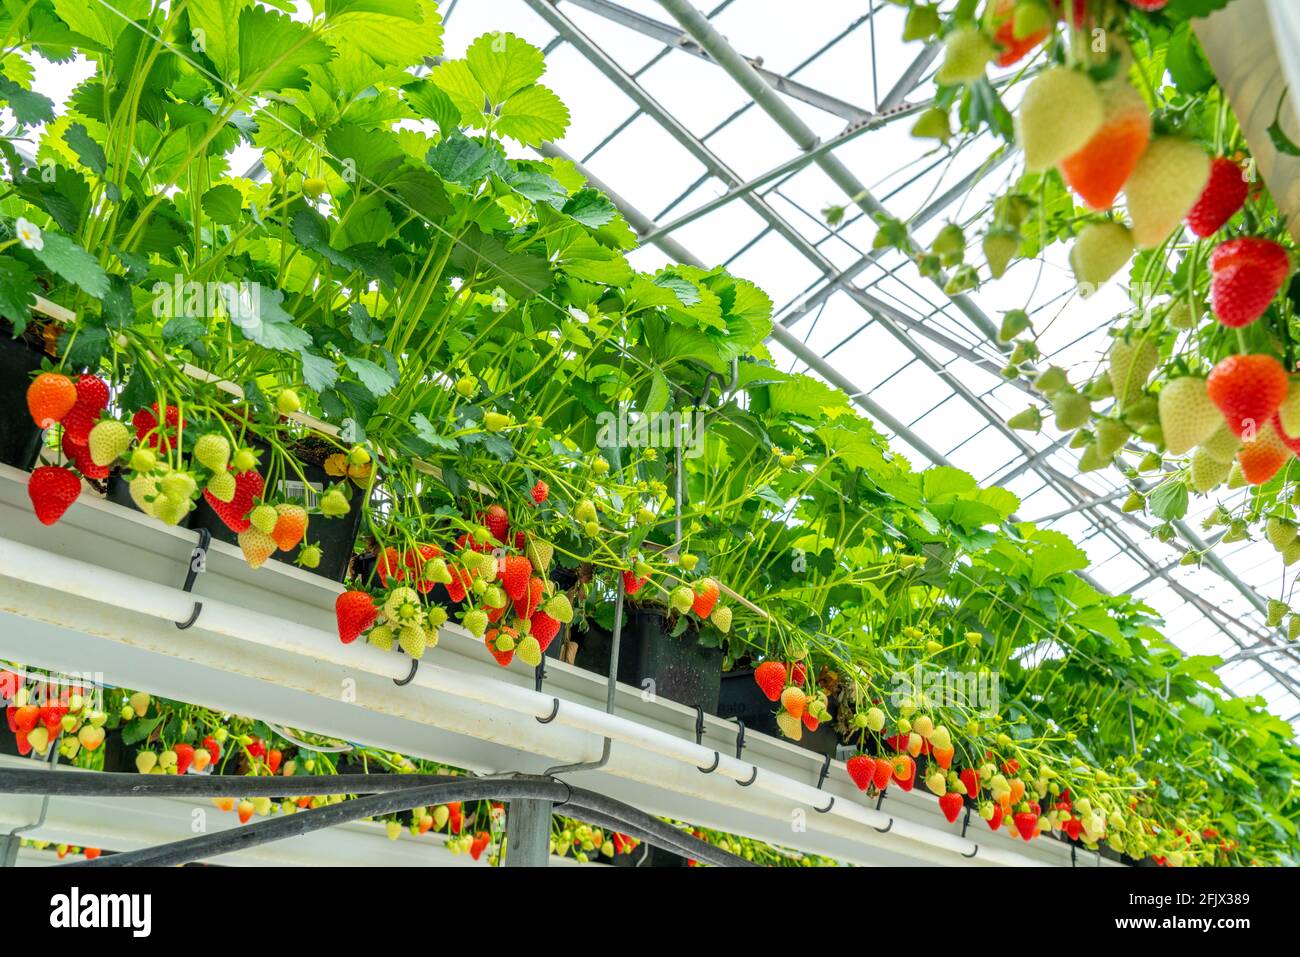 Erdbeeranbau im Gewächshaus, Erdbeerpflanzen mit Beeren in unterschiedlichen Reifegraden, werden durch Tröpfchenbewässerung einzeln bewässert und mit Foto de stock